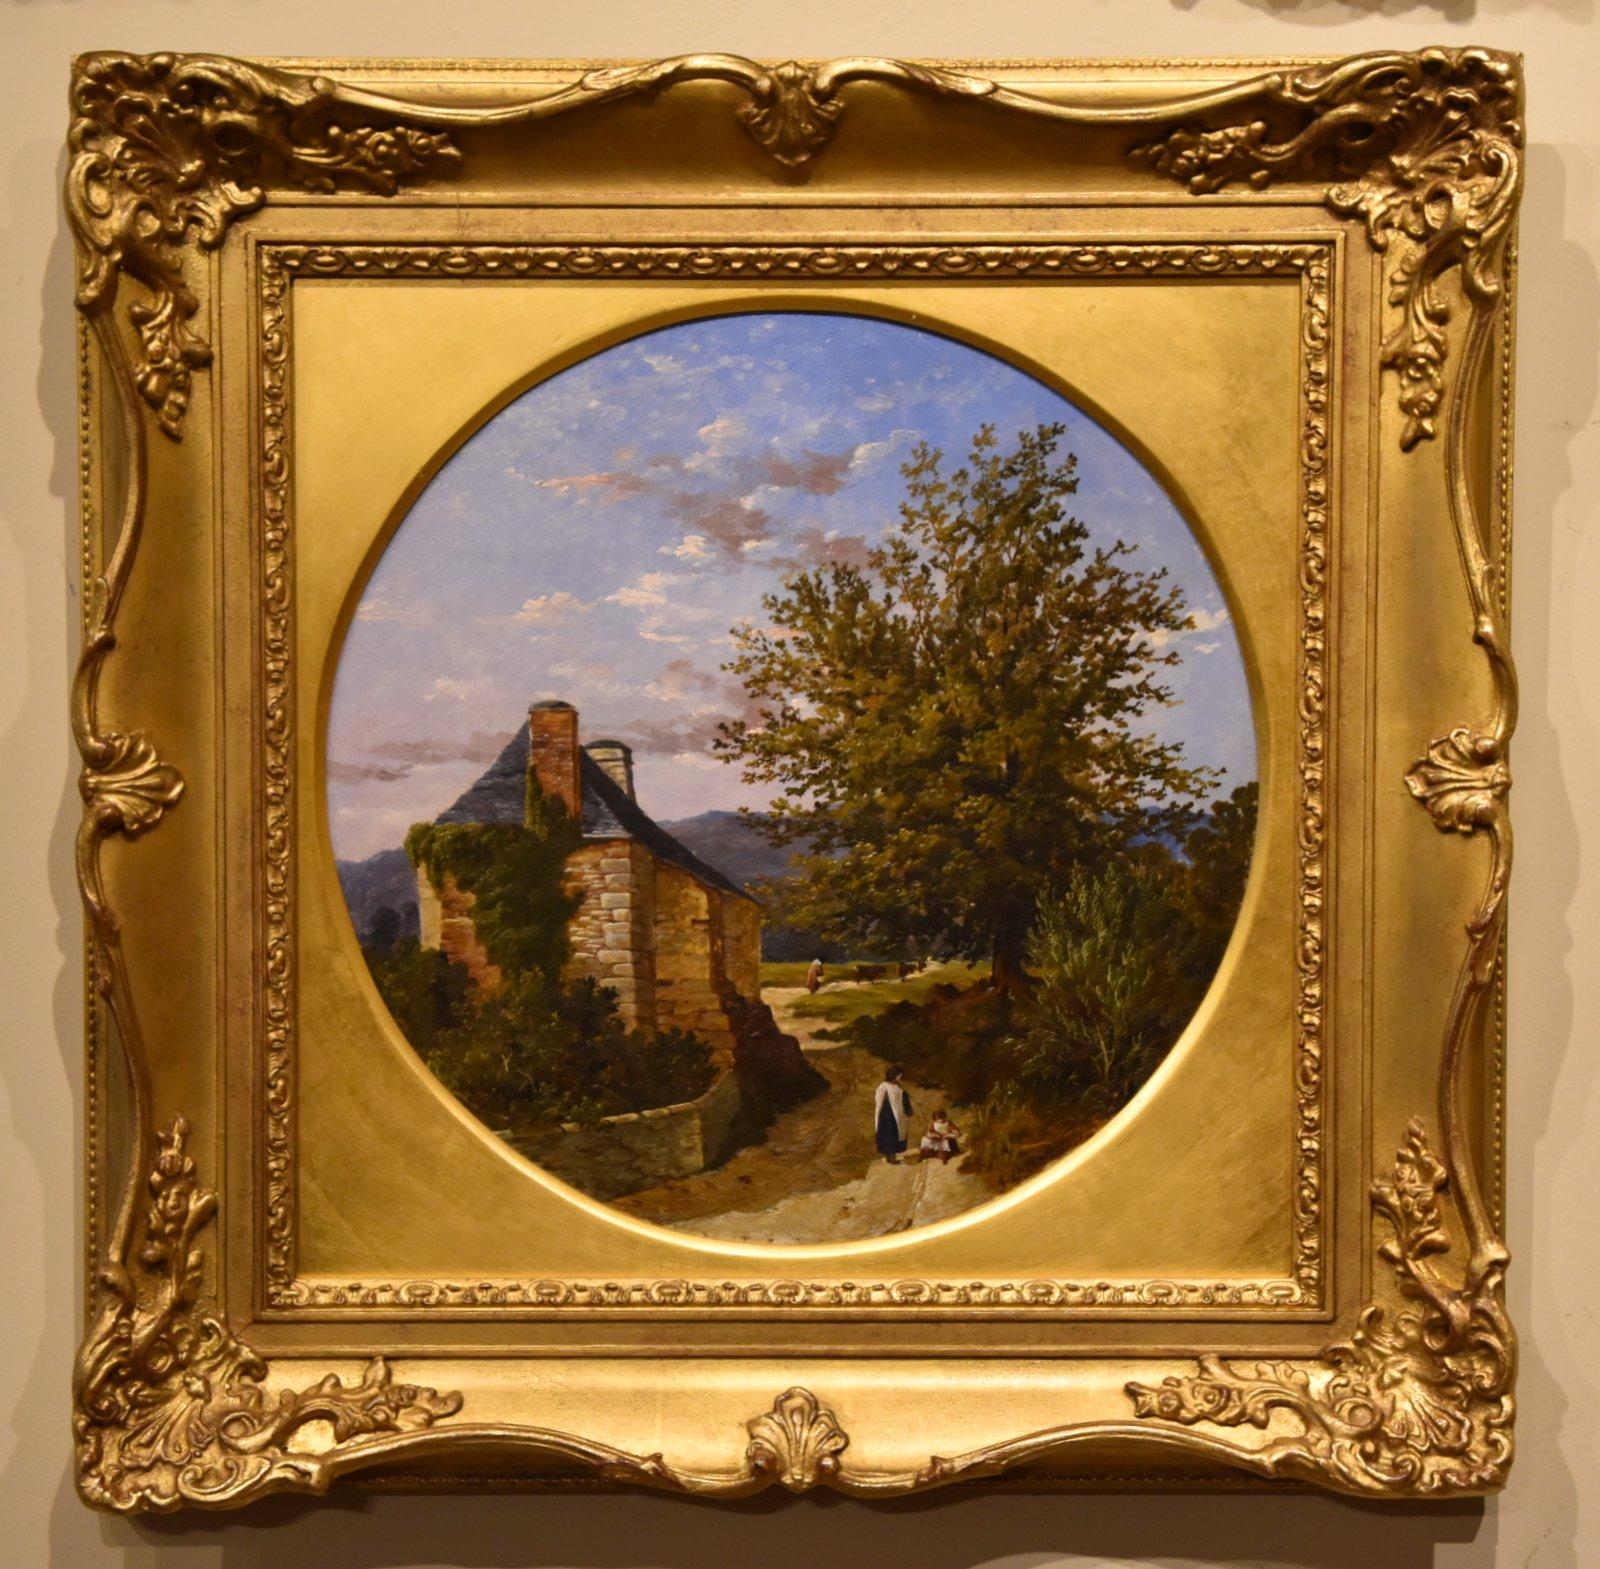 Peinture à l'huile d'Arthur Bevan Collier "A South West View" 1832- 1908 Éduqué à Sherbourne, il a exposé à la Royal Academy de 1855 à 1899, ainsi qu'à la British Institution, à l'ART&R ART et à l'Ipswich Arts club. Huile sur toile.